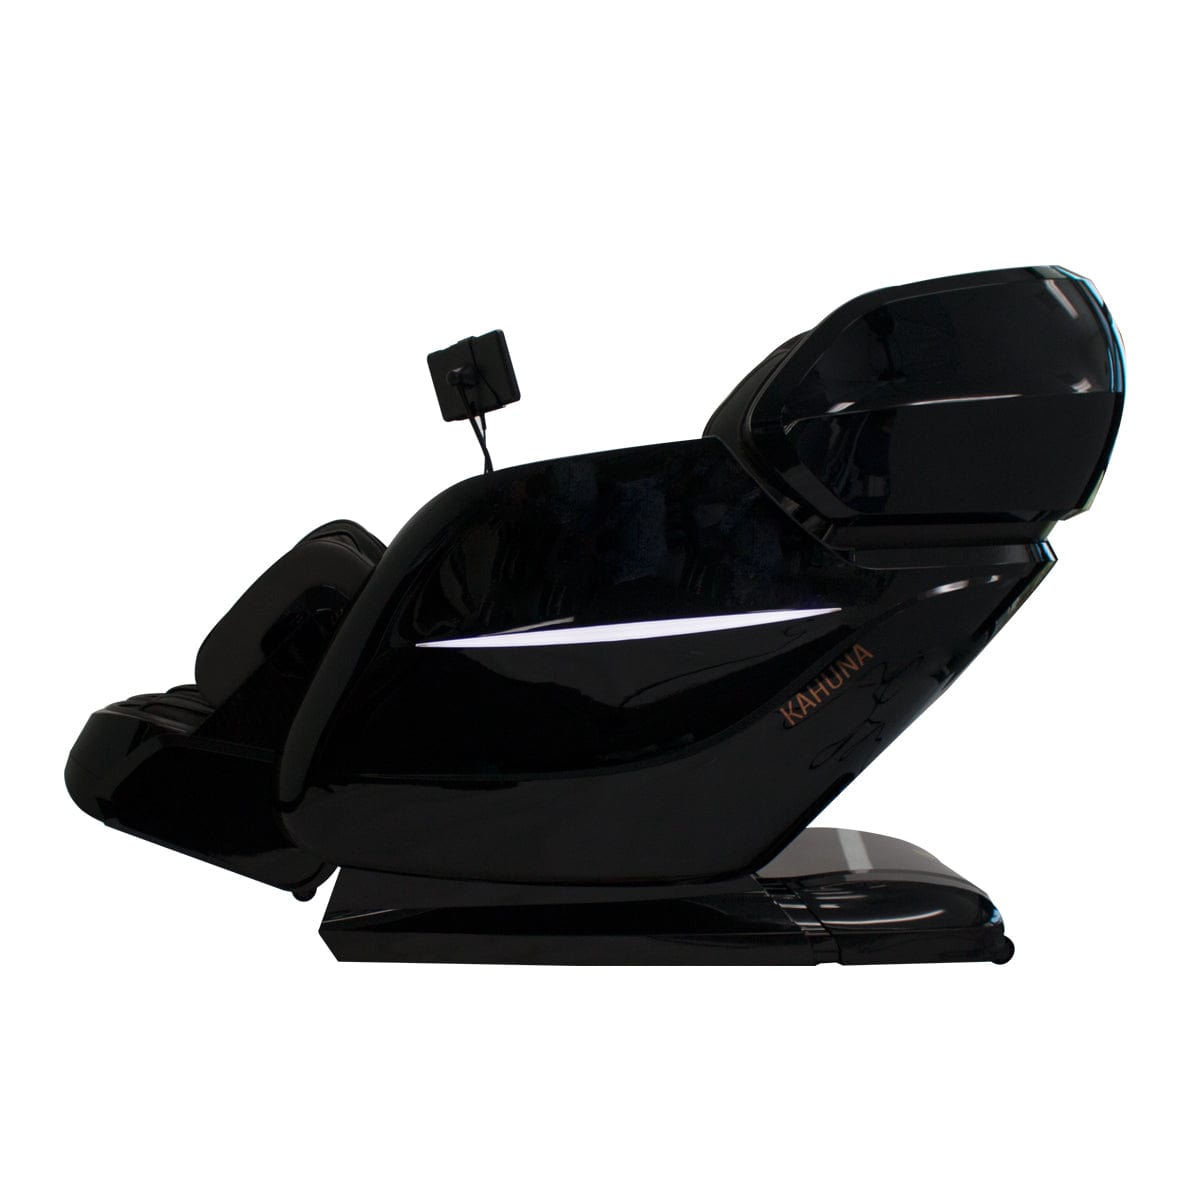 Kahuna Chair EM-8300 3D Massage Chair